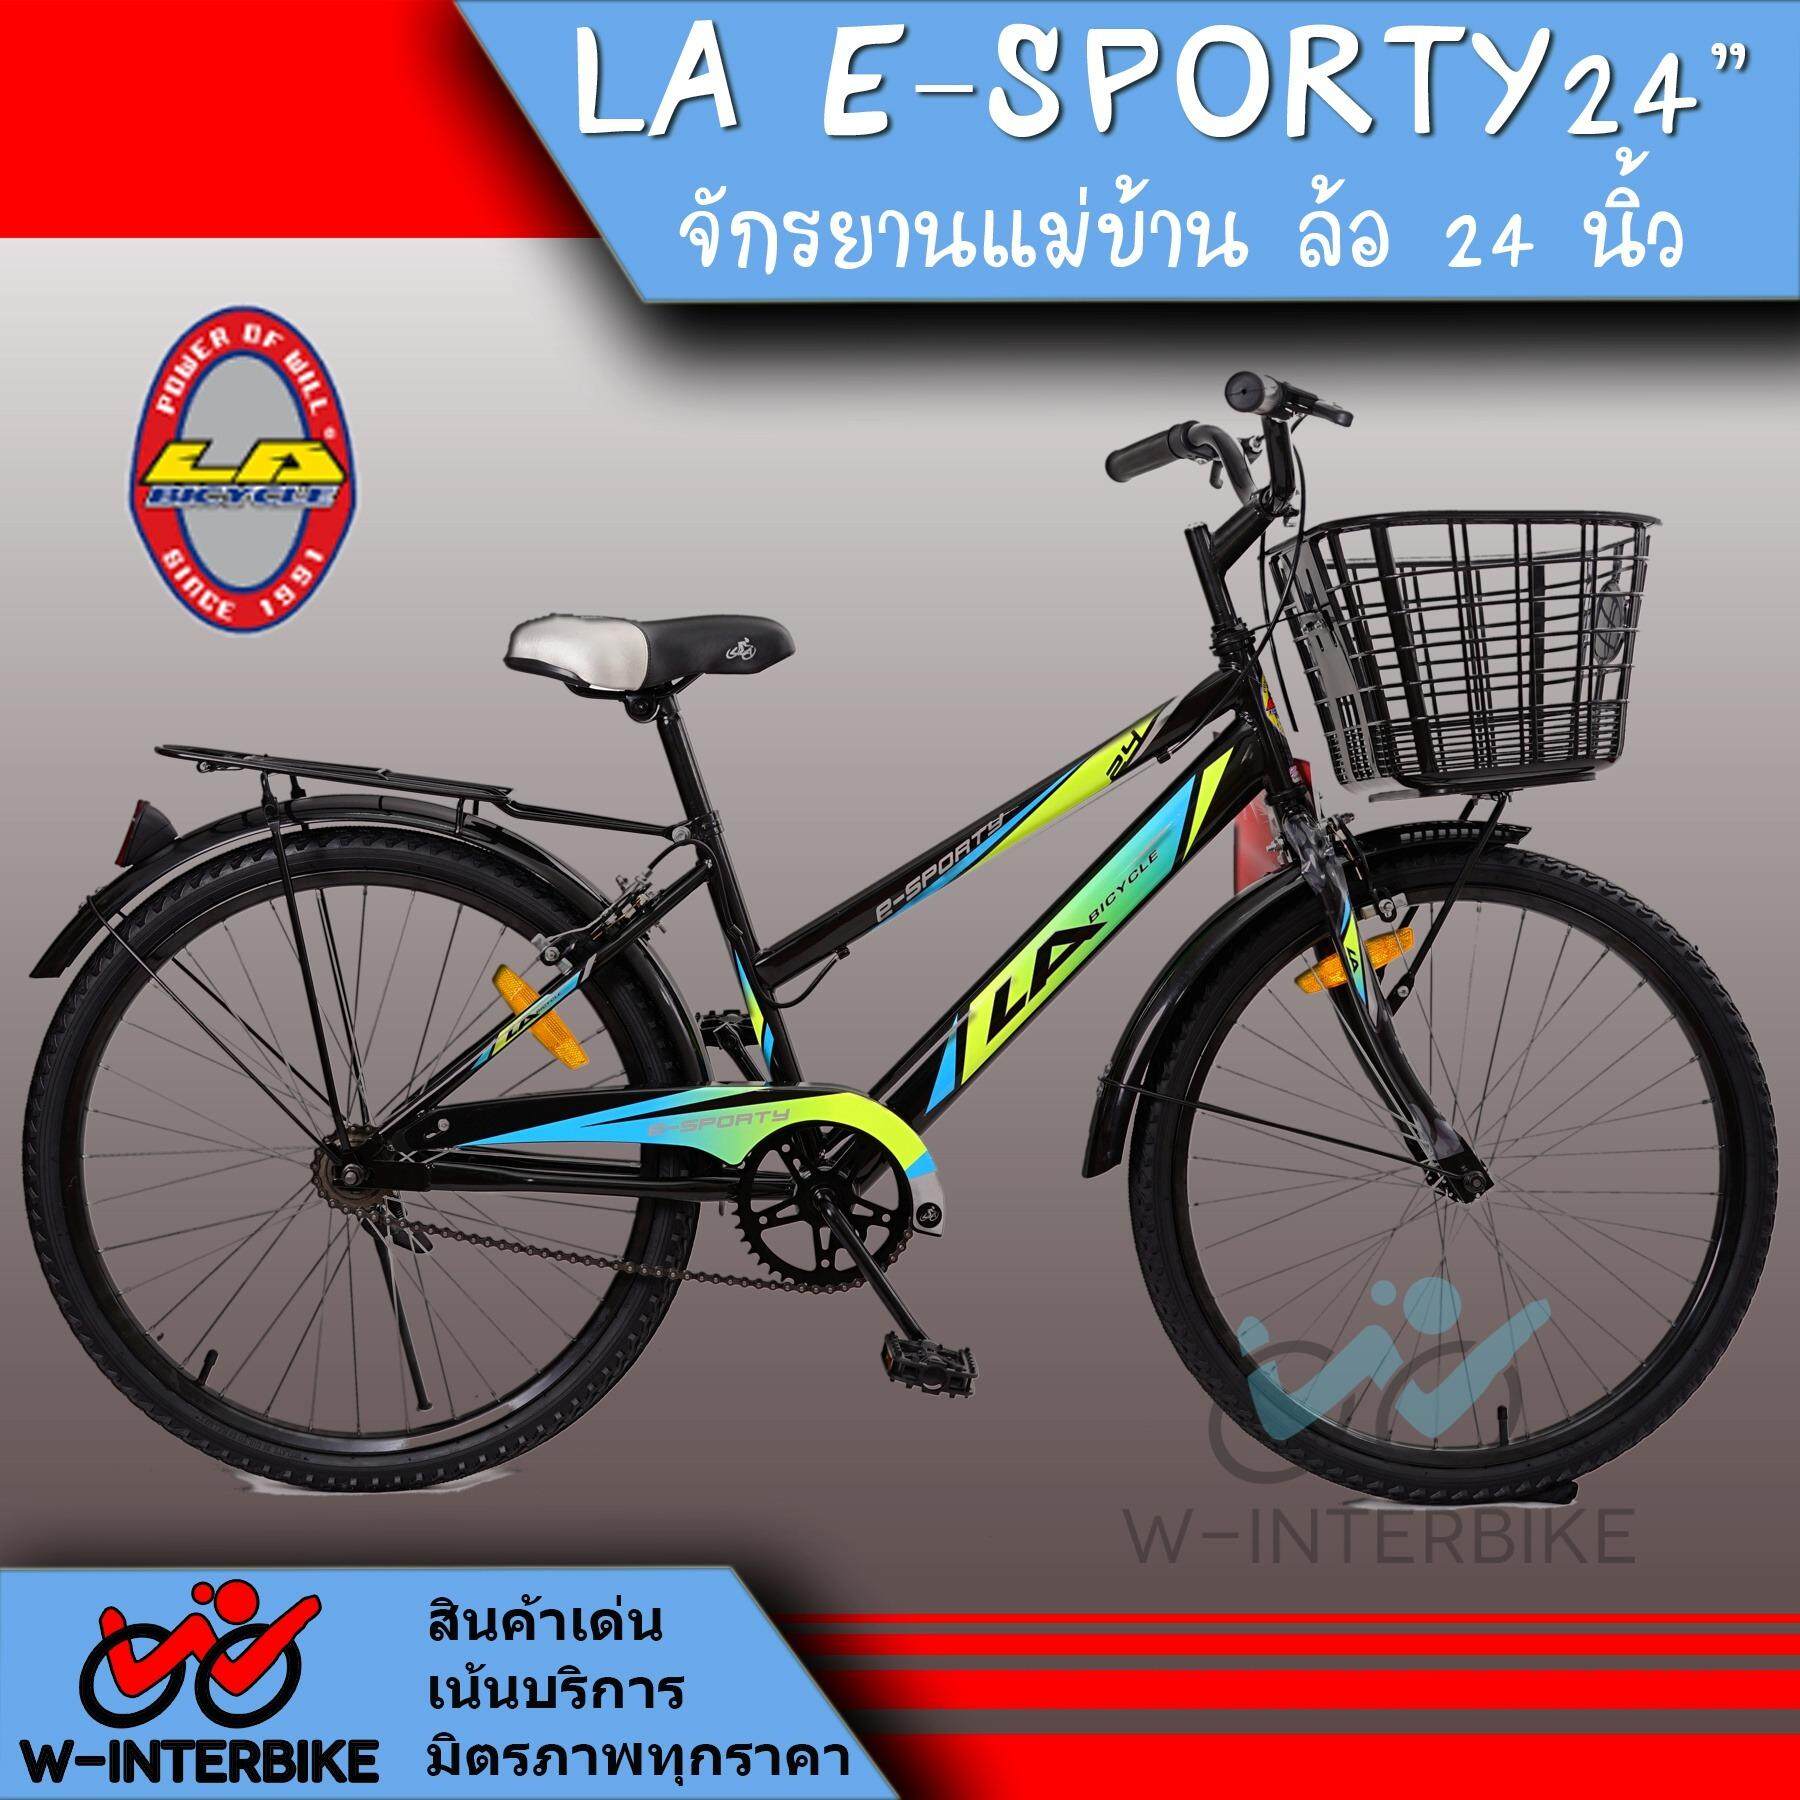 LA Bicycle จักรยาน รุ่น 24